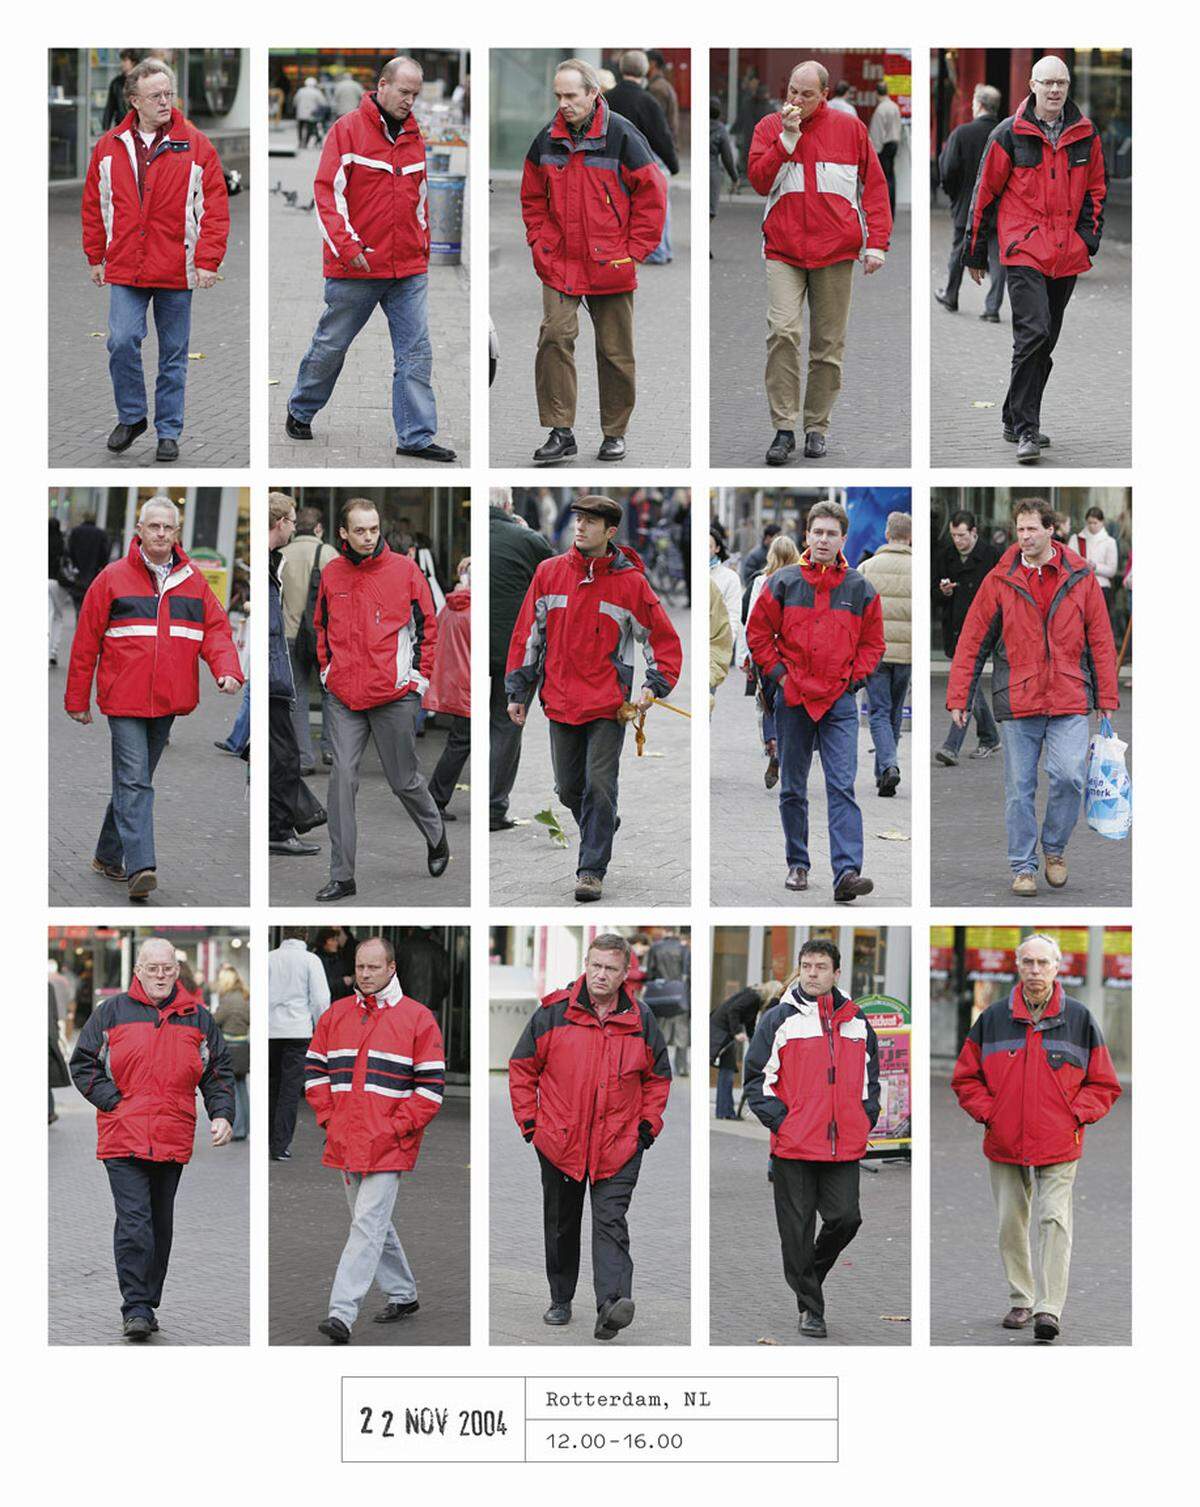 Um seine Fotomotive abzulichten, ging er besonders unauffällig ans Werk. Um den Hals trug er eine Kamera, der Auslöser betätigte er in der Hosentasche. Rote Jacken waren 2004 in Rotterdam der Renner.